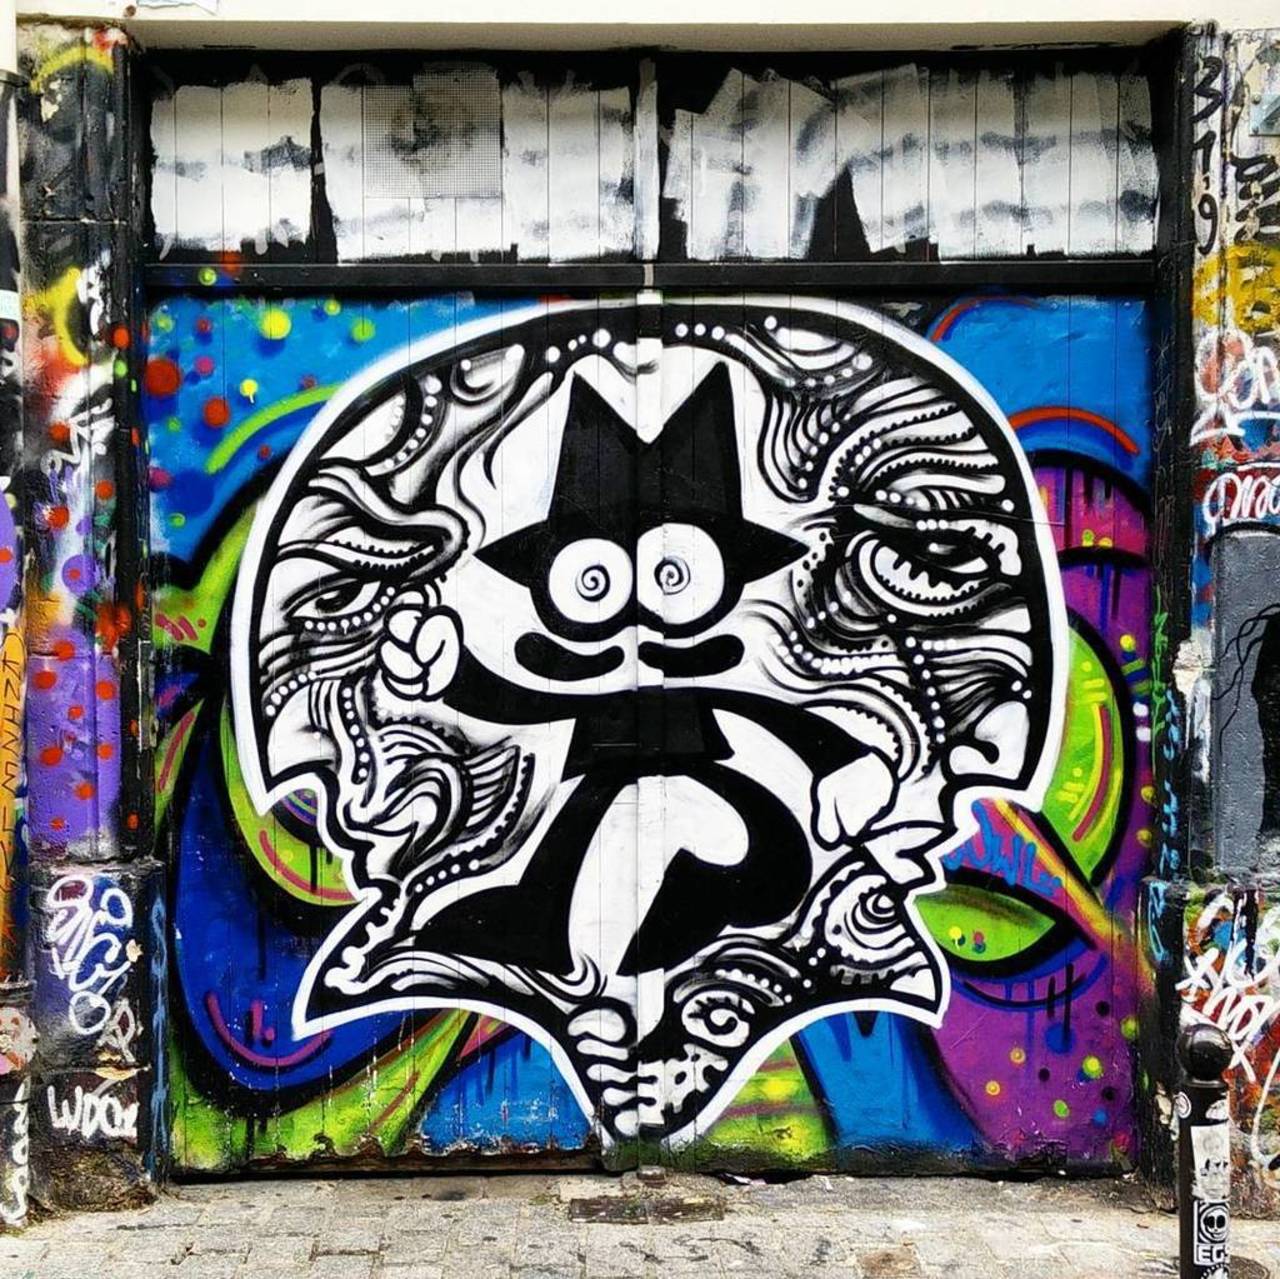 By @themaskedbastard #ZDEY

#streetart #streetartparis #parisstreetart #parisgraffiti #graffiti #graffitiart #urban… https://t.co/IYvvVbDjdj